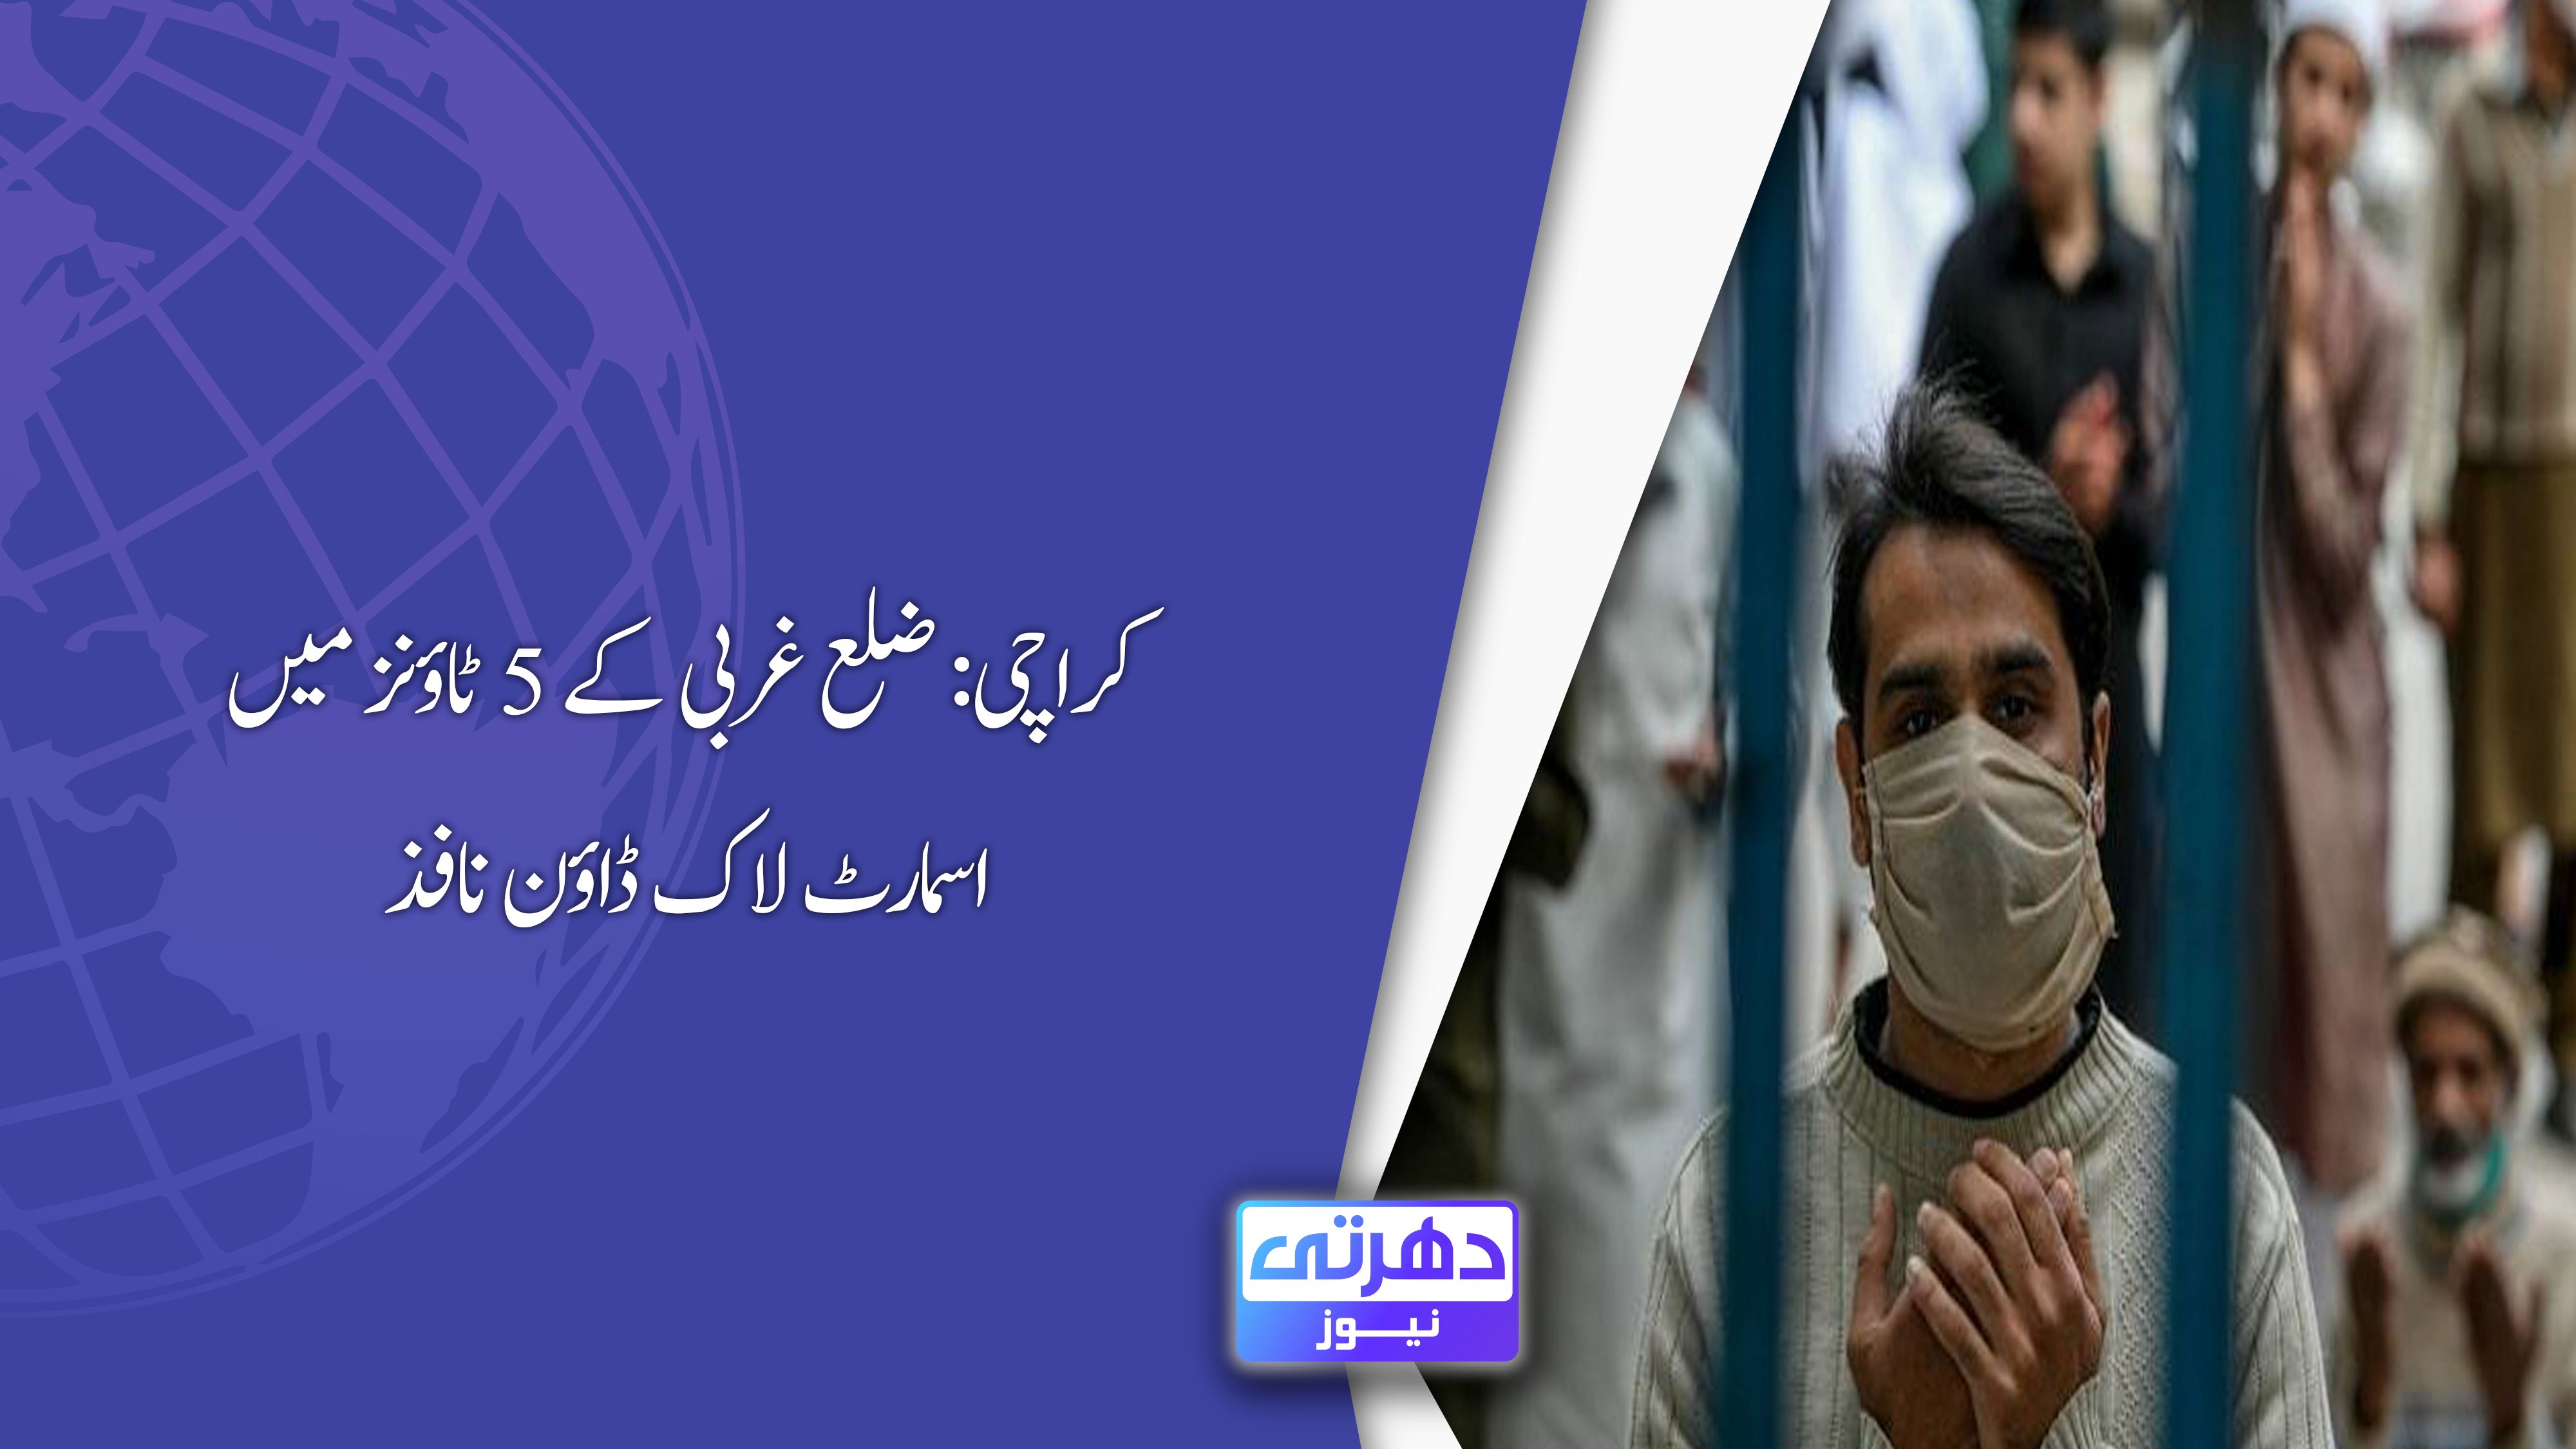 کراچی: ضلع غربی کے 5 ٹاؤنز میں اسمارٹ لاک ڈاؤن نافذ